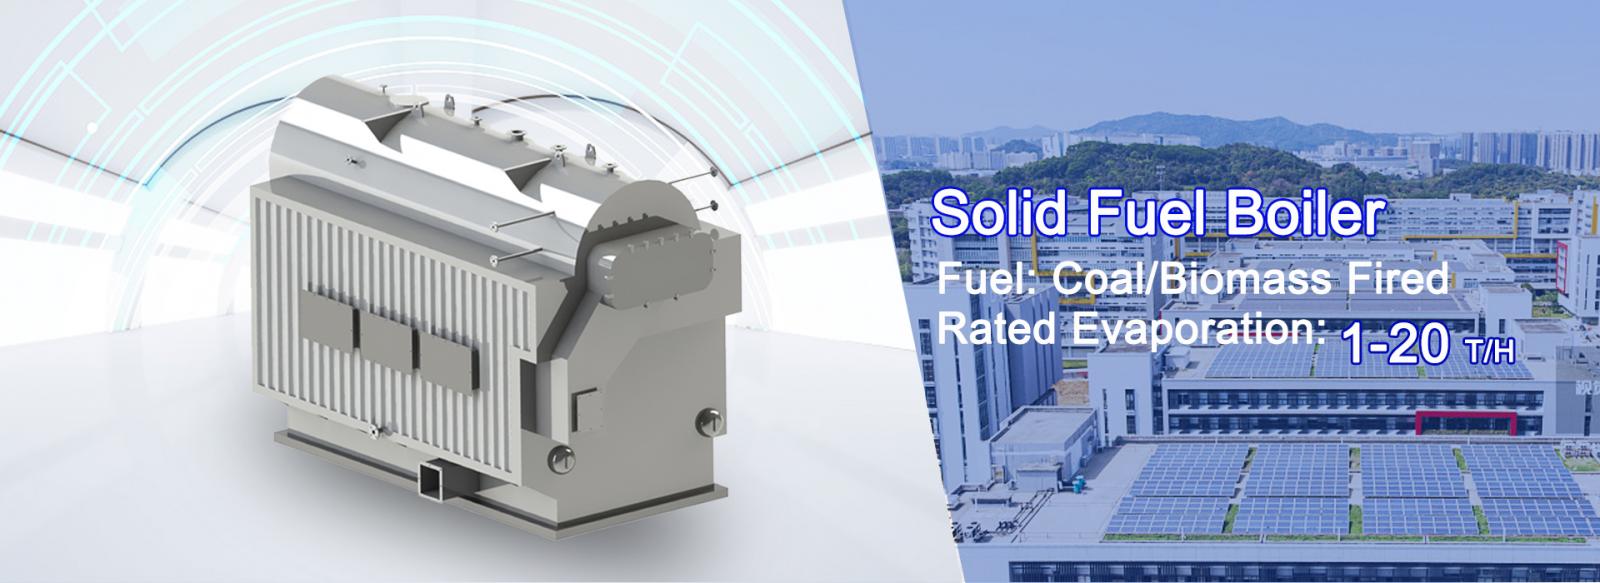 solid-fuel-boiler